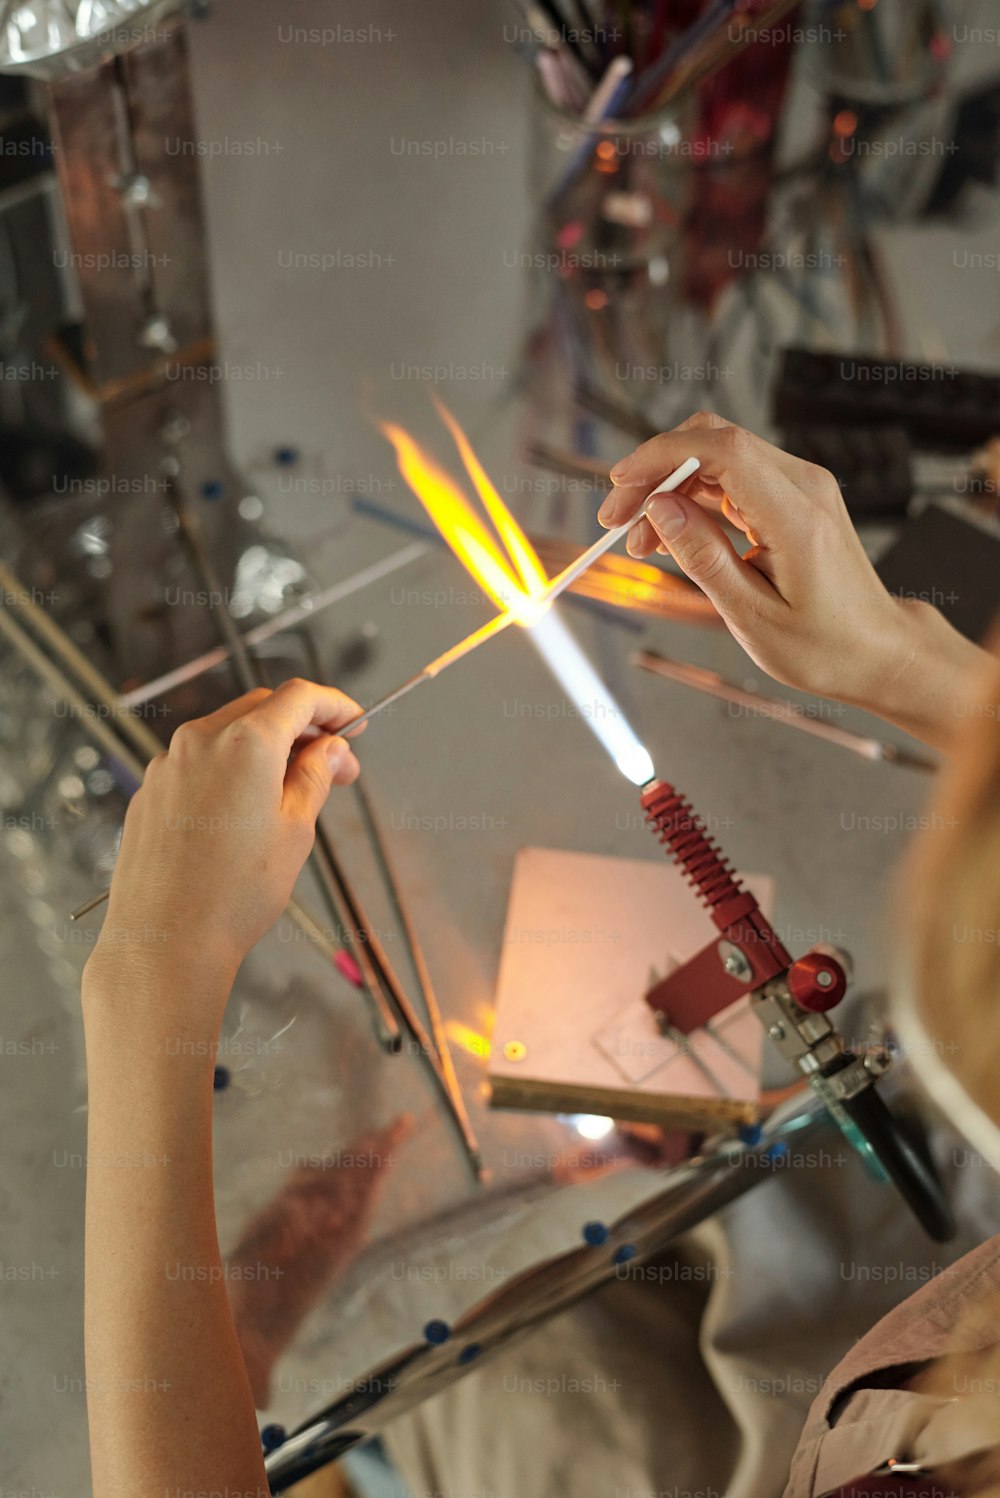 Manos de una joven artesana quemando una pieza de trabajo larga en forma de palo de vidrio mientras la sostiene en llamas saliendo del quemador durante el trabajo con lámparas